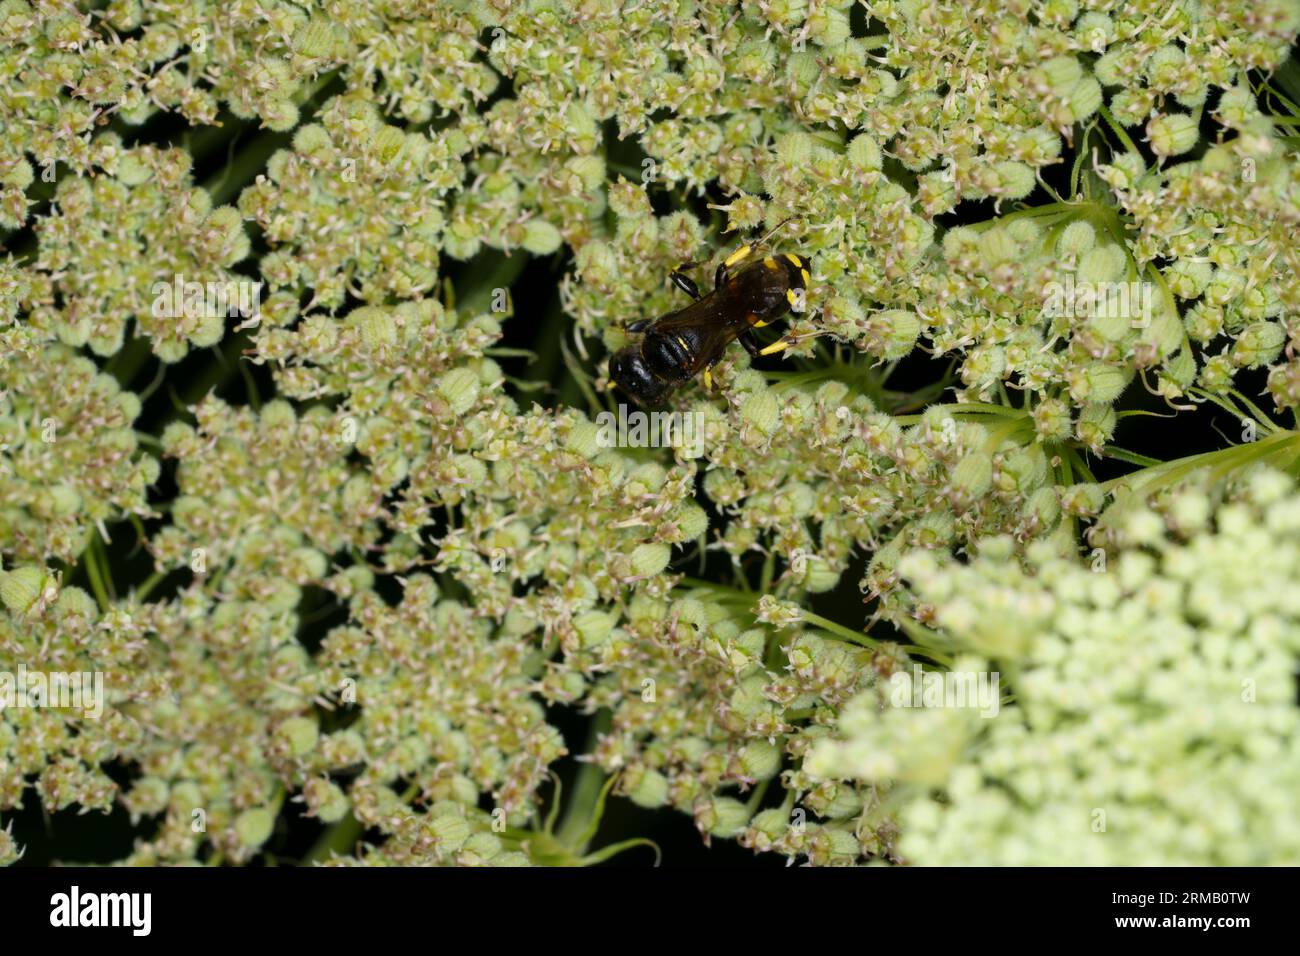 Ectemnius continuus Familie Crabronidae Gattung Ectemnius Quadrat Kopf Wespe wilde Natur Insektenfotografie, Bild, Tapete Stockfoto